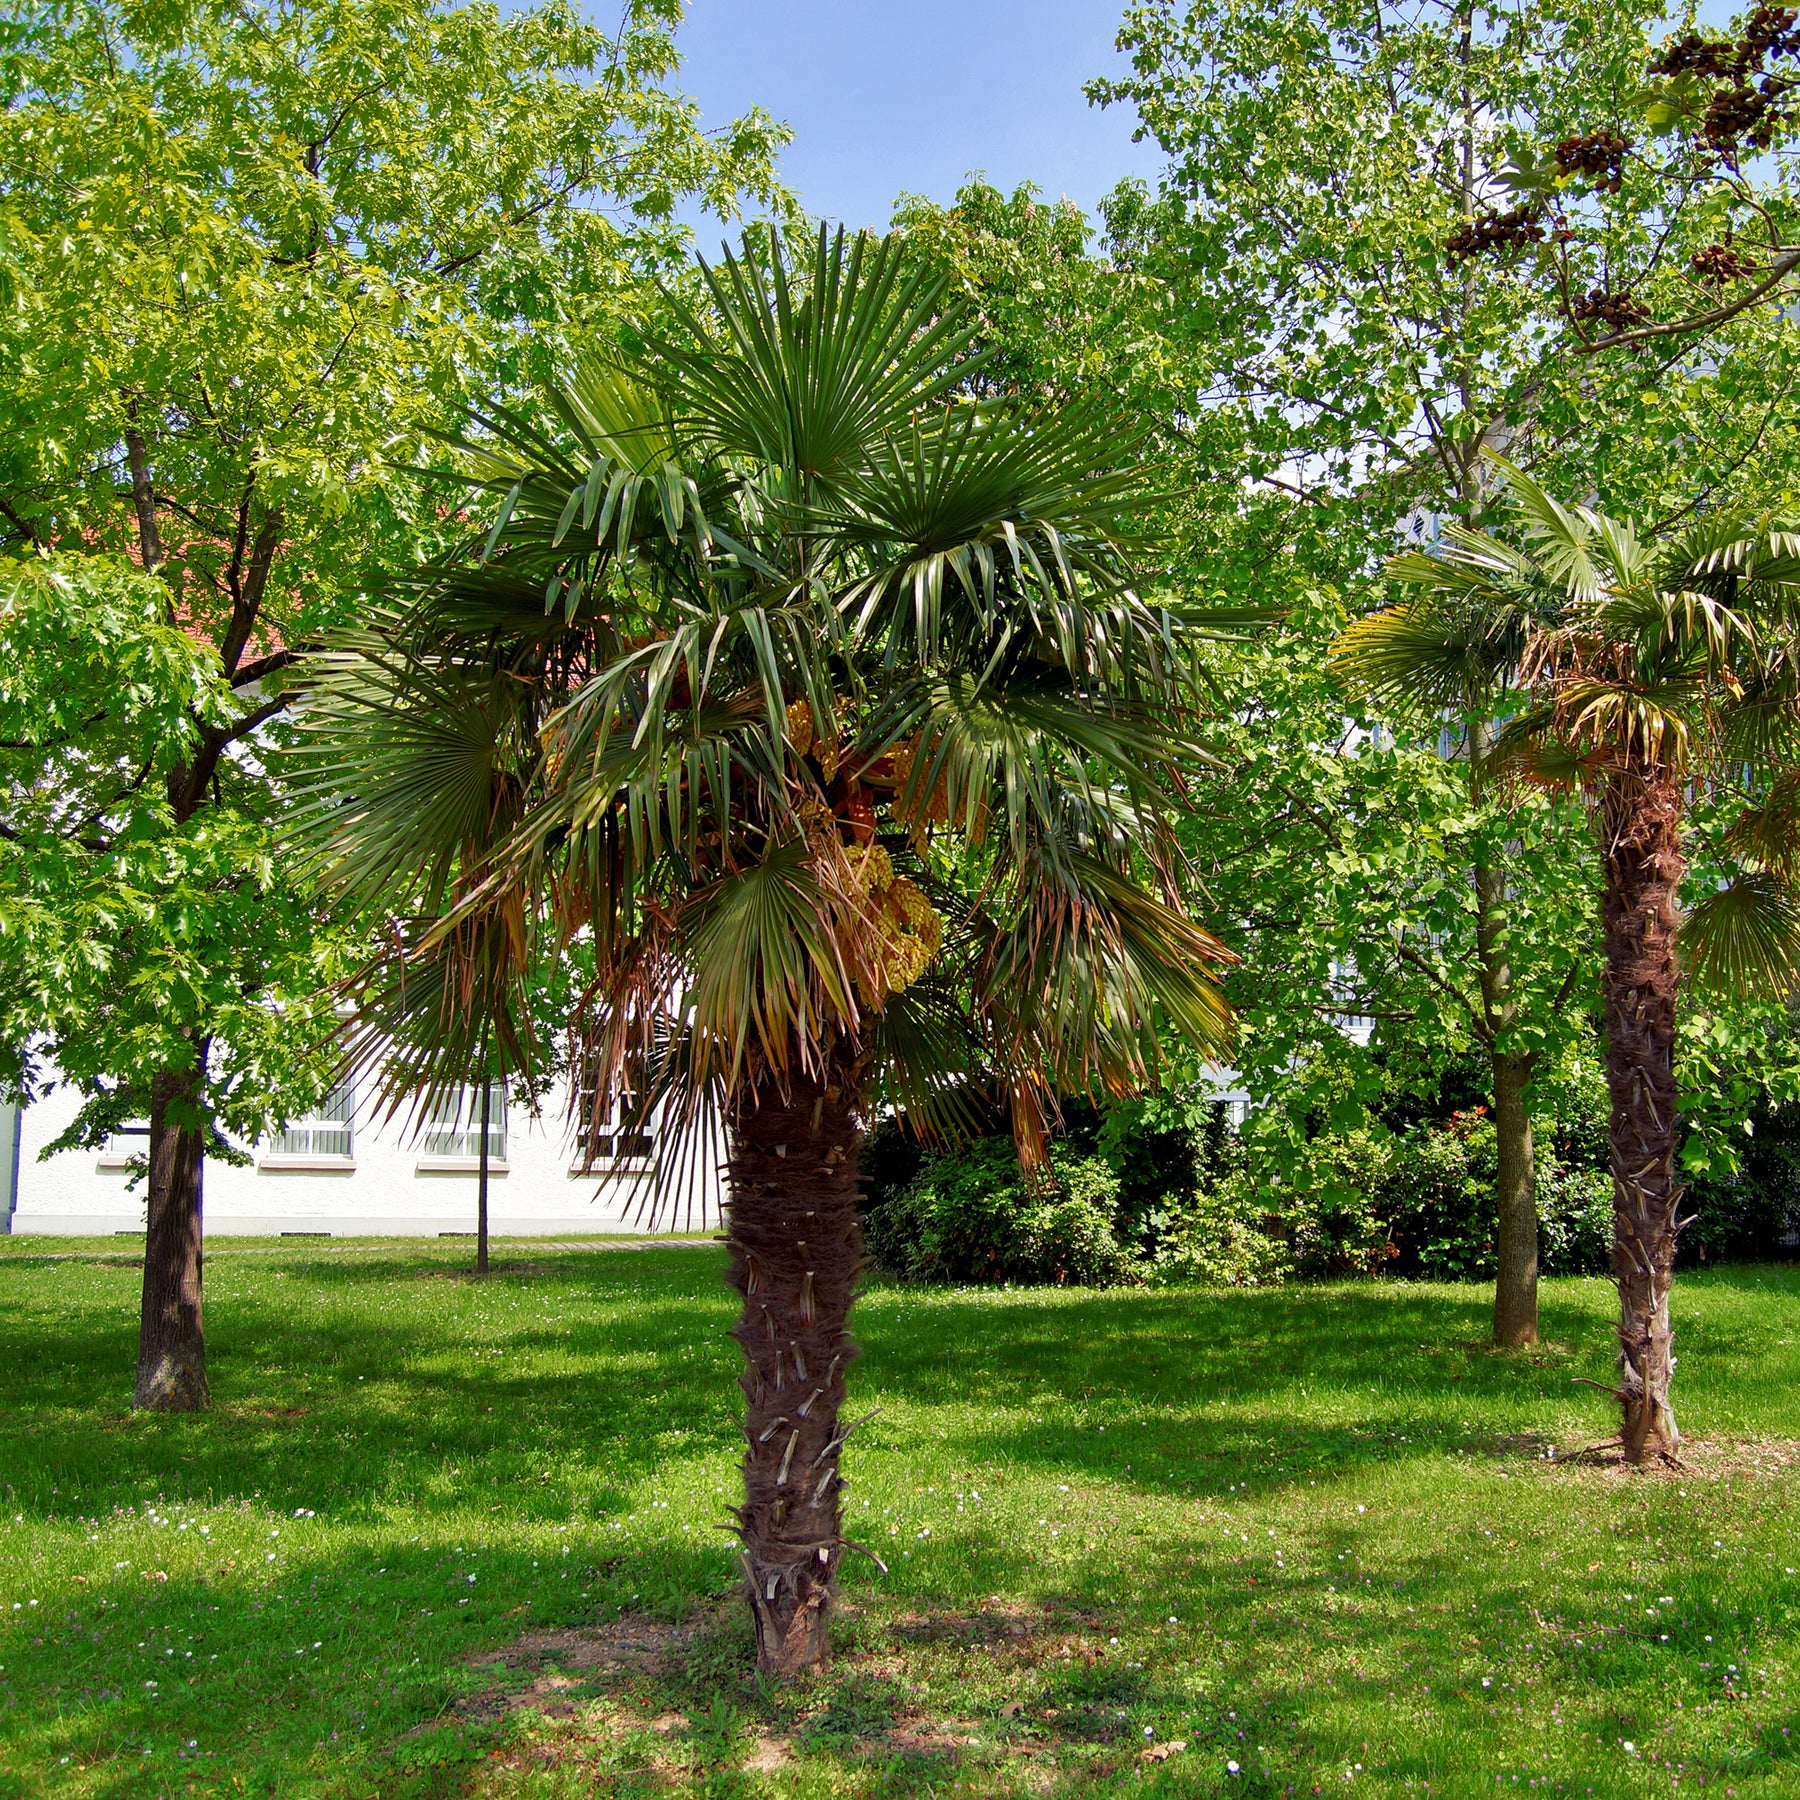 Palmier de Chine - Société Nationale d'Horticulture de France